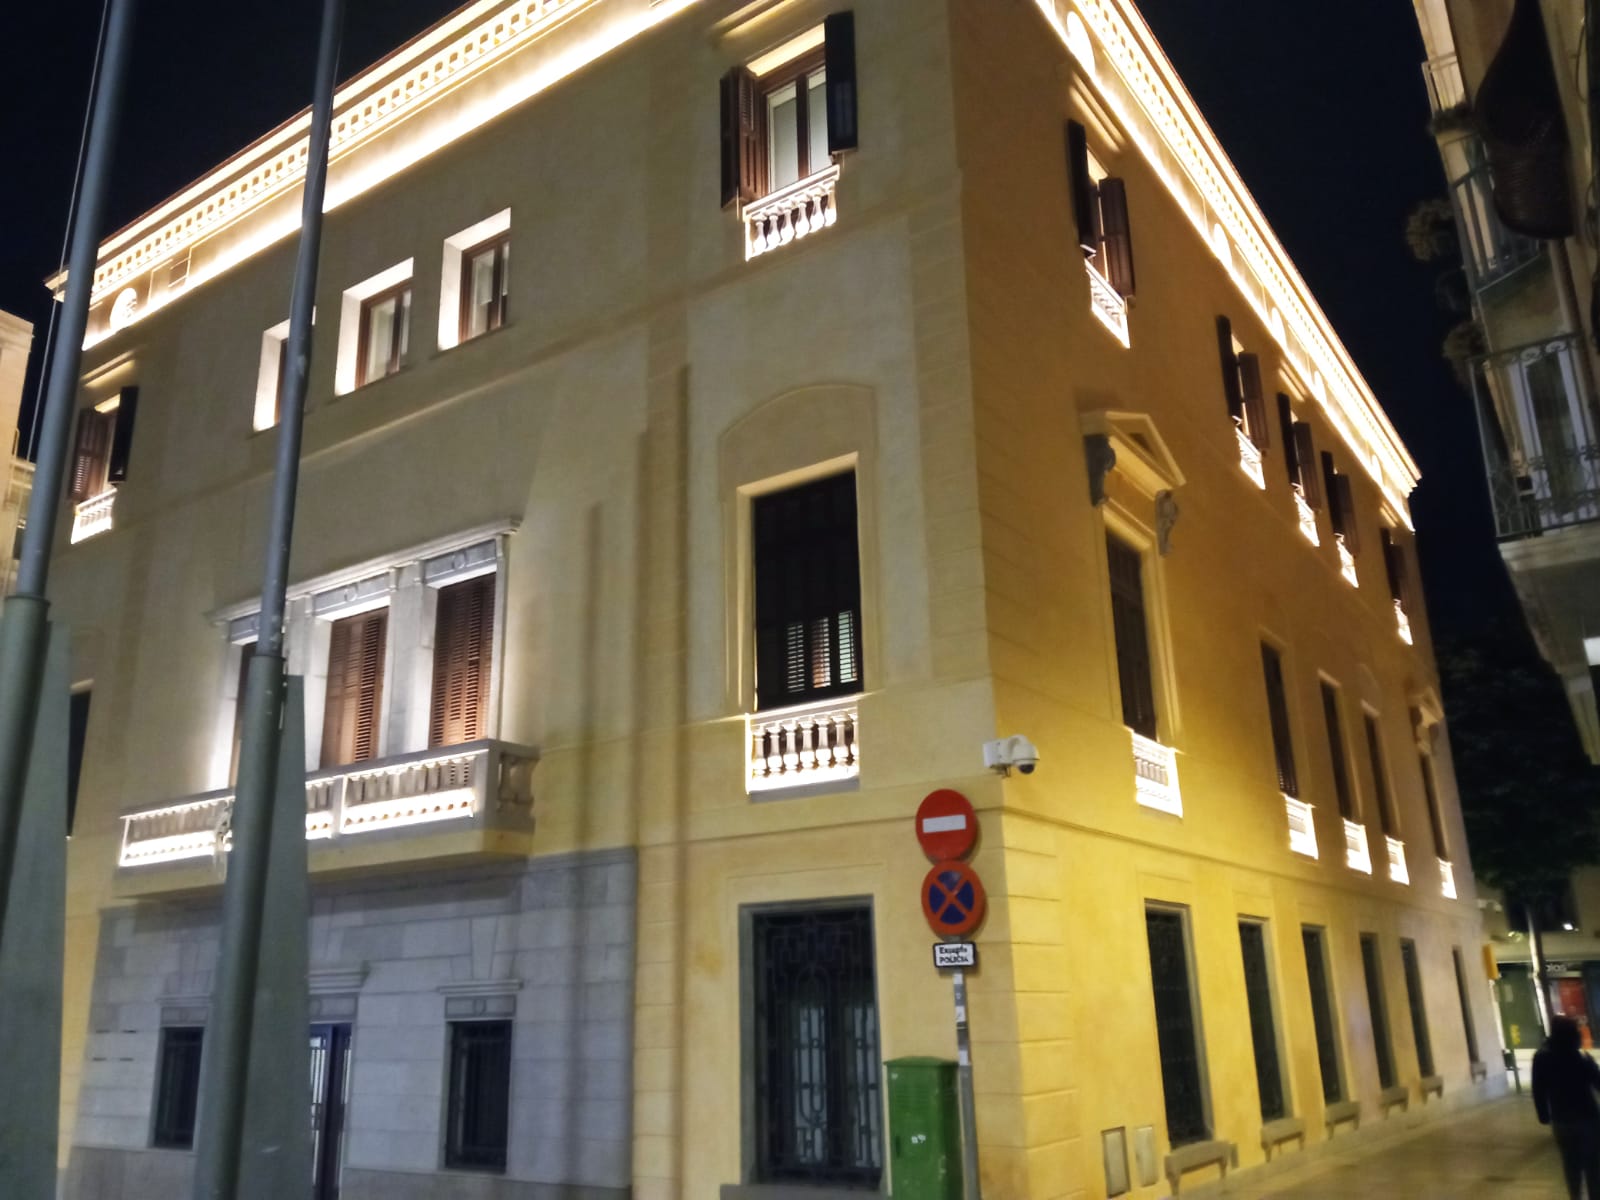 Les proves d'il·luminació nova de l'edifici de l'Ajuntament de Mataró. Foto: Cugat C.